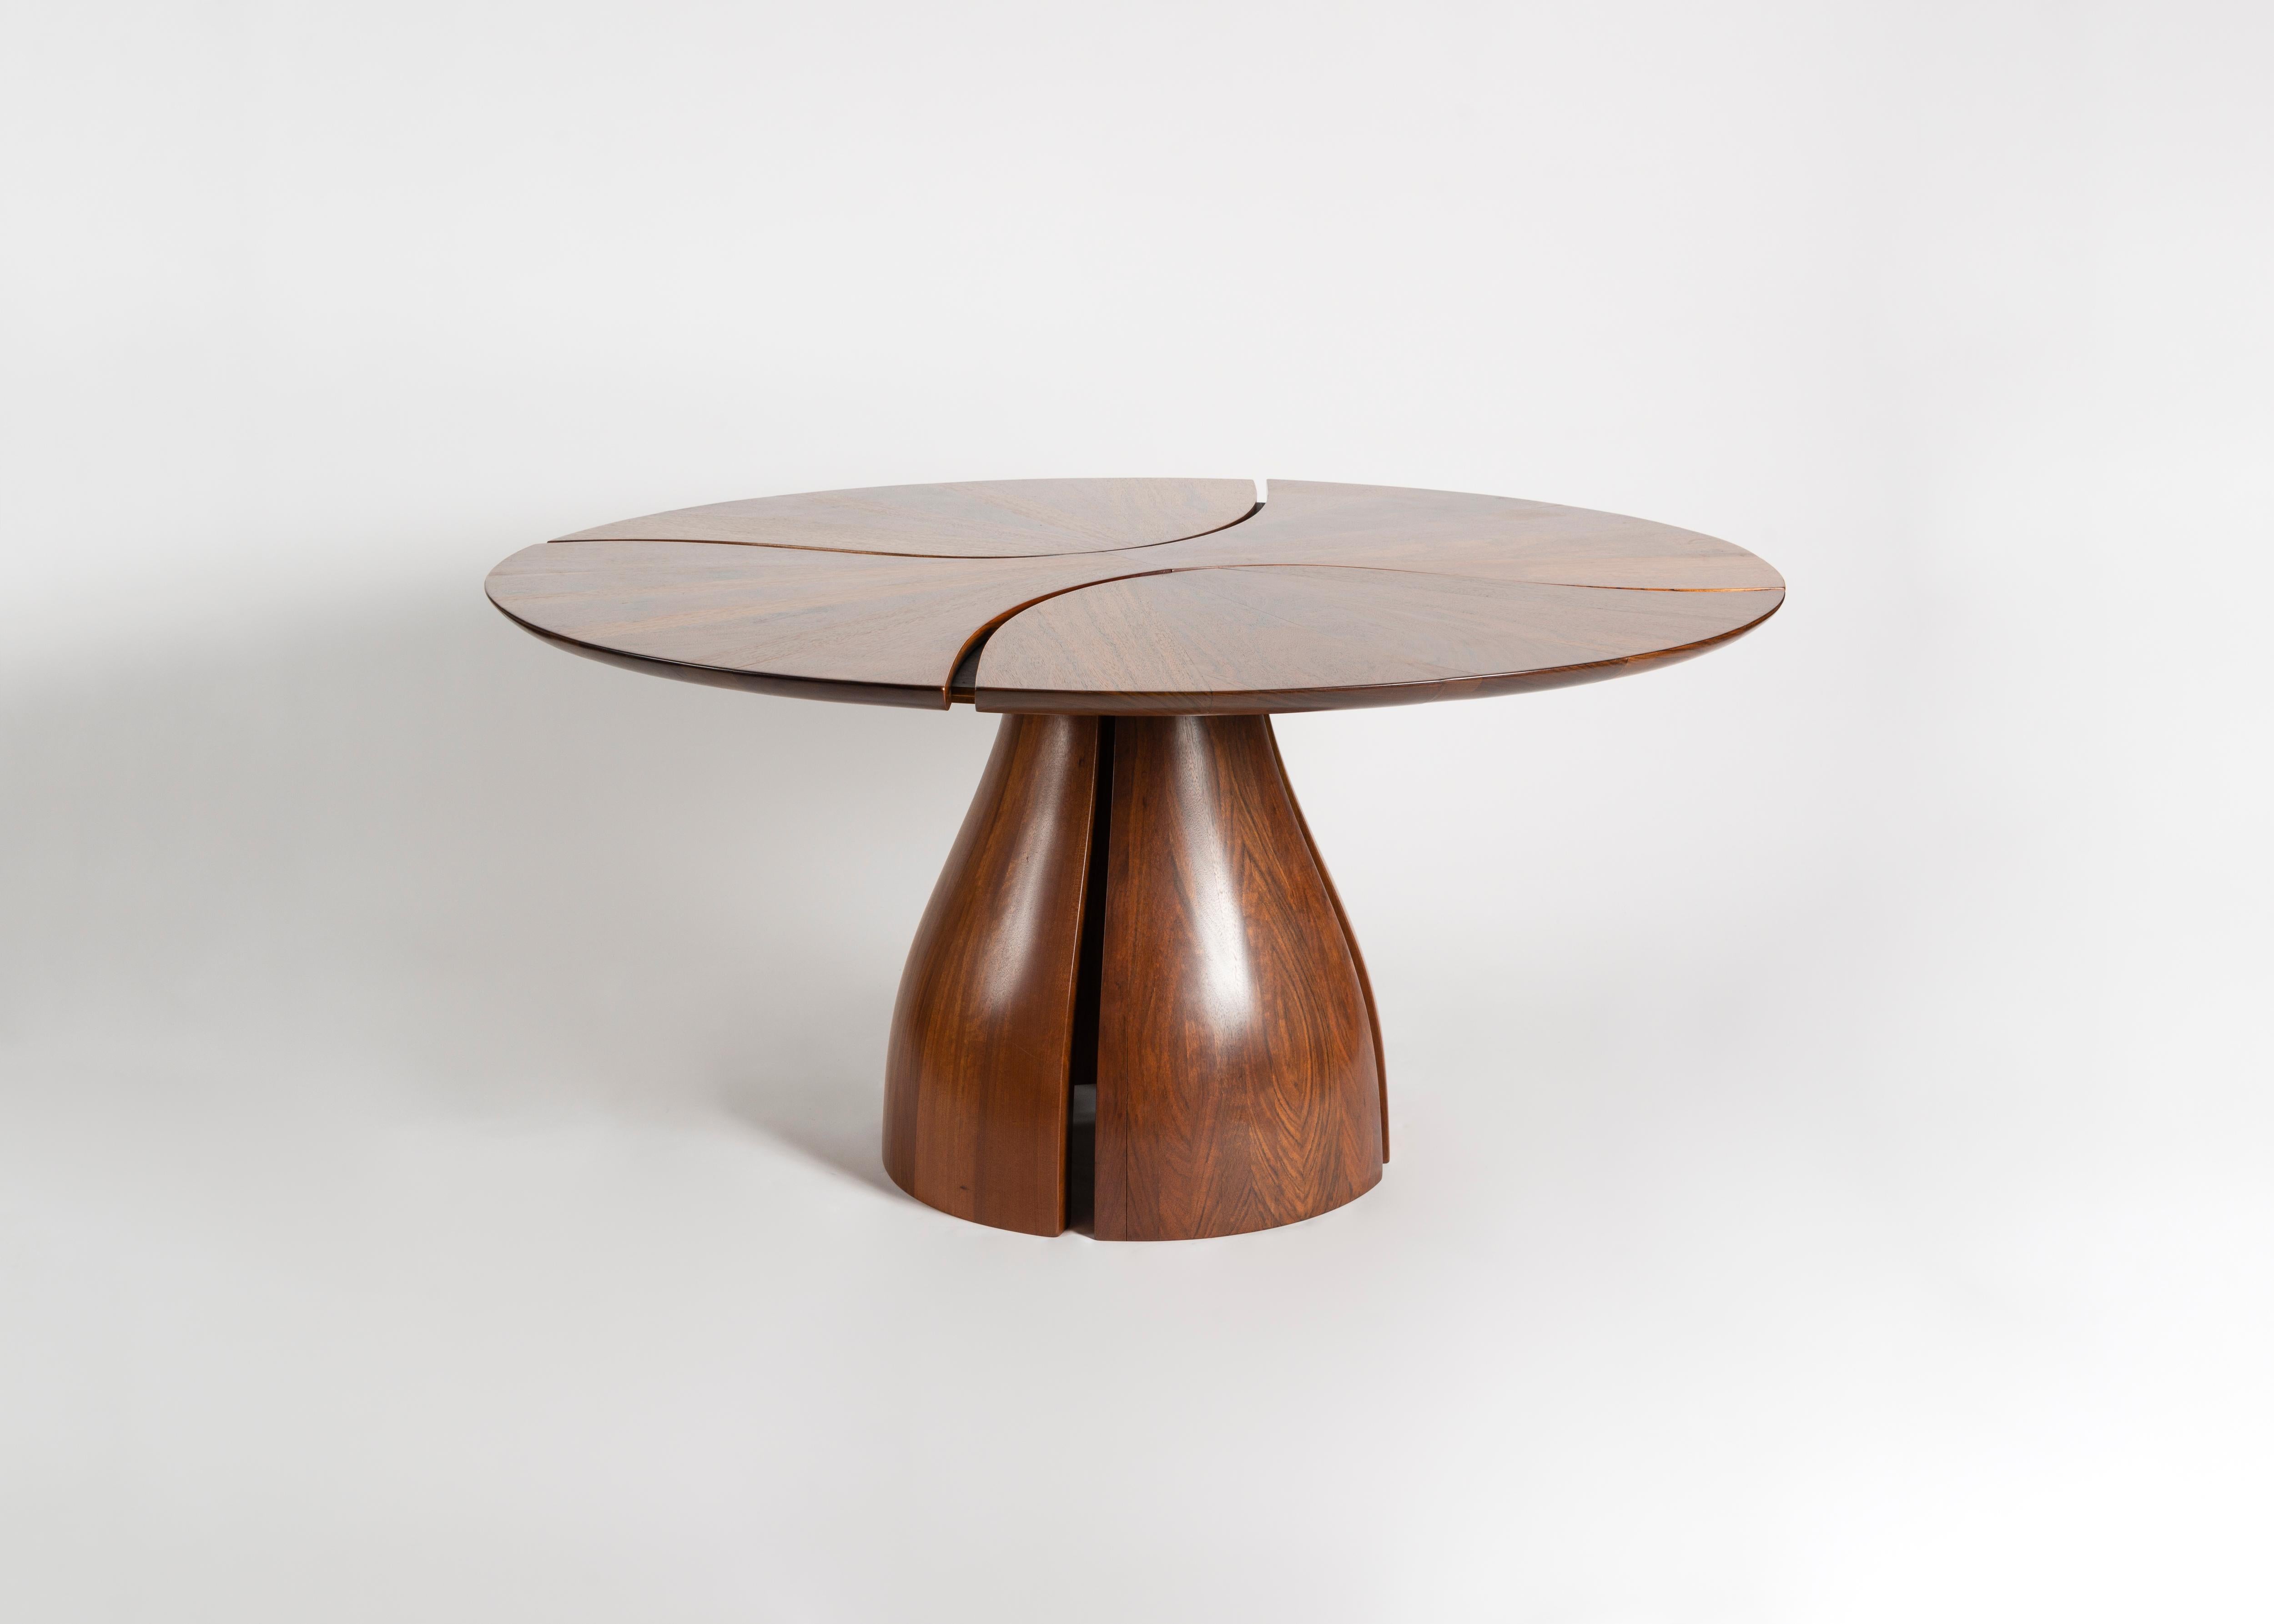 Cette table sculpturale est composée de plusieurs pièces de bois du Mozambique qui s'emboîtent parfaitement pour créer la forme d'un lys. Comme la plupart des œuvres de Michael Can, la pièce établit un contraste entre la qualité fluide des formes de